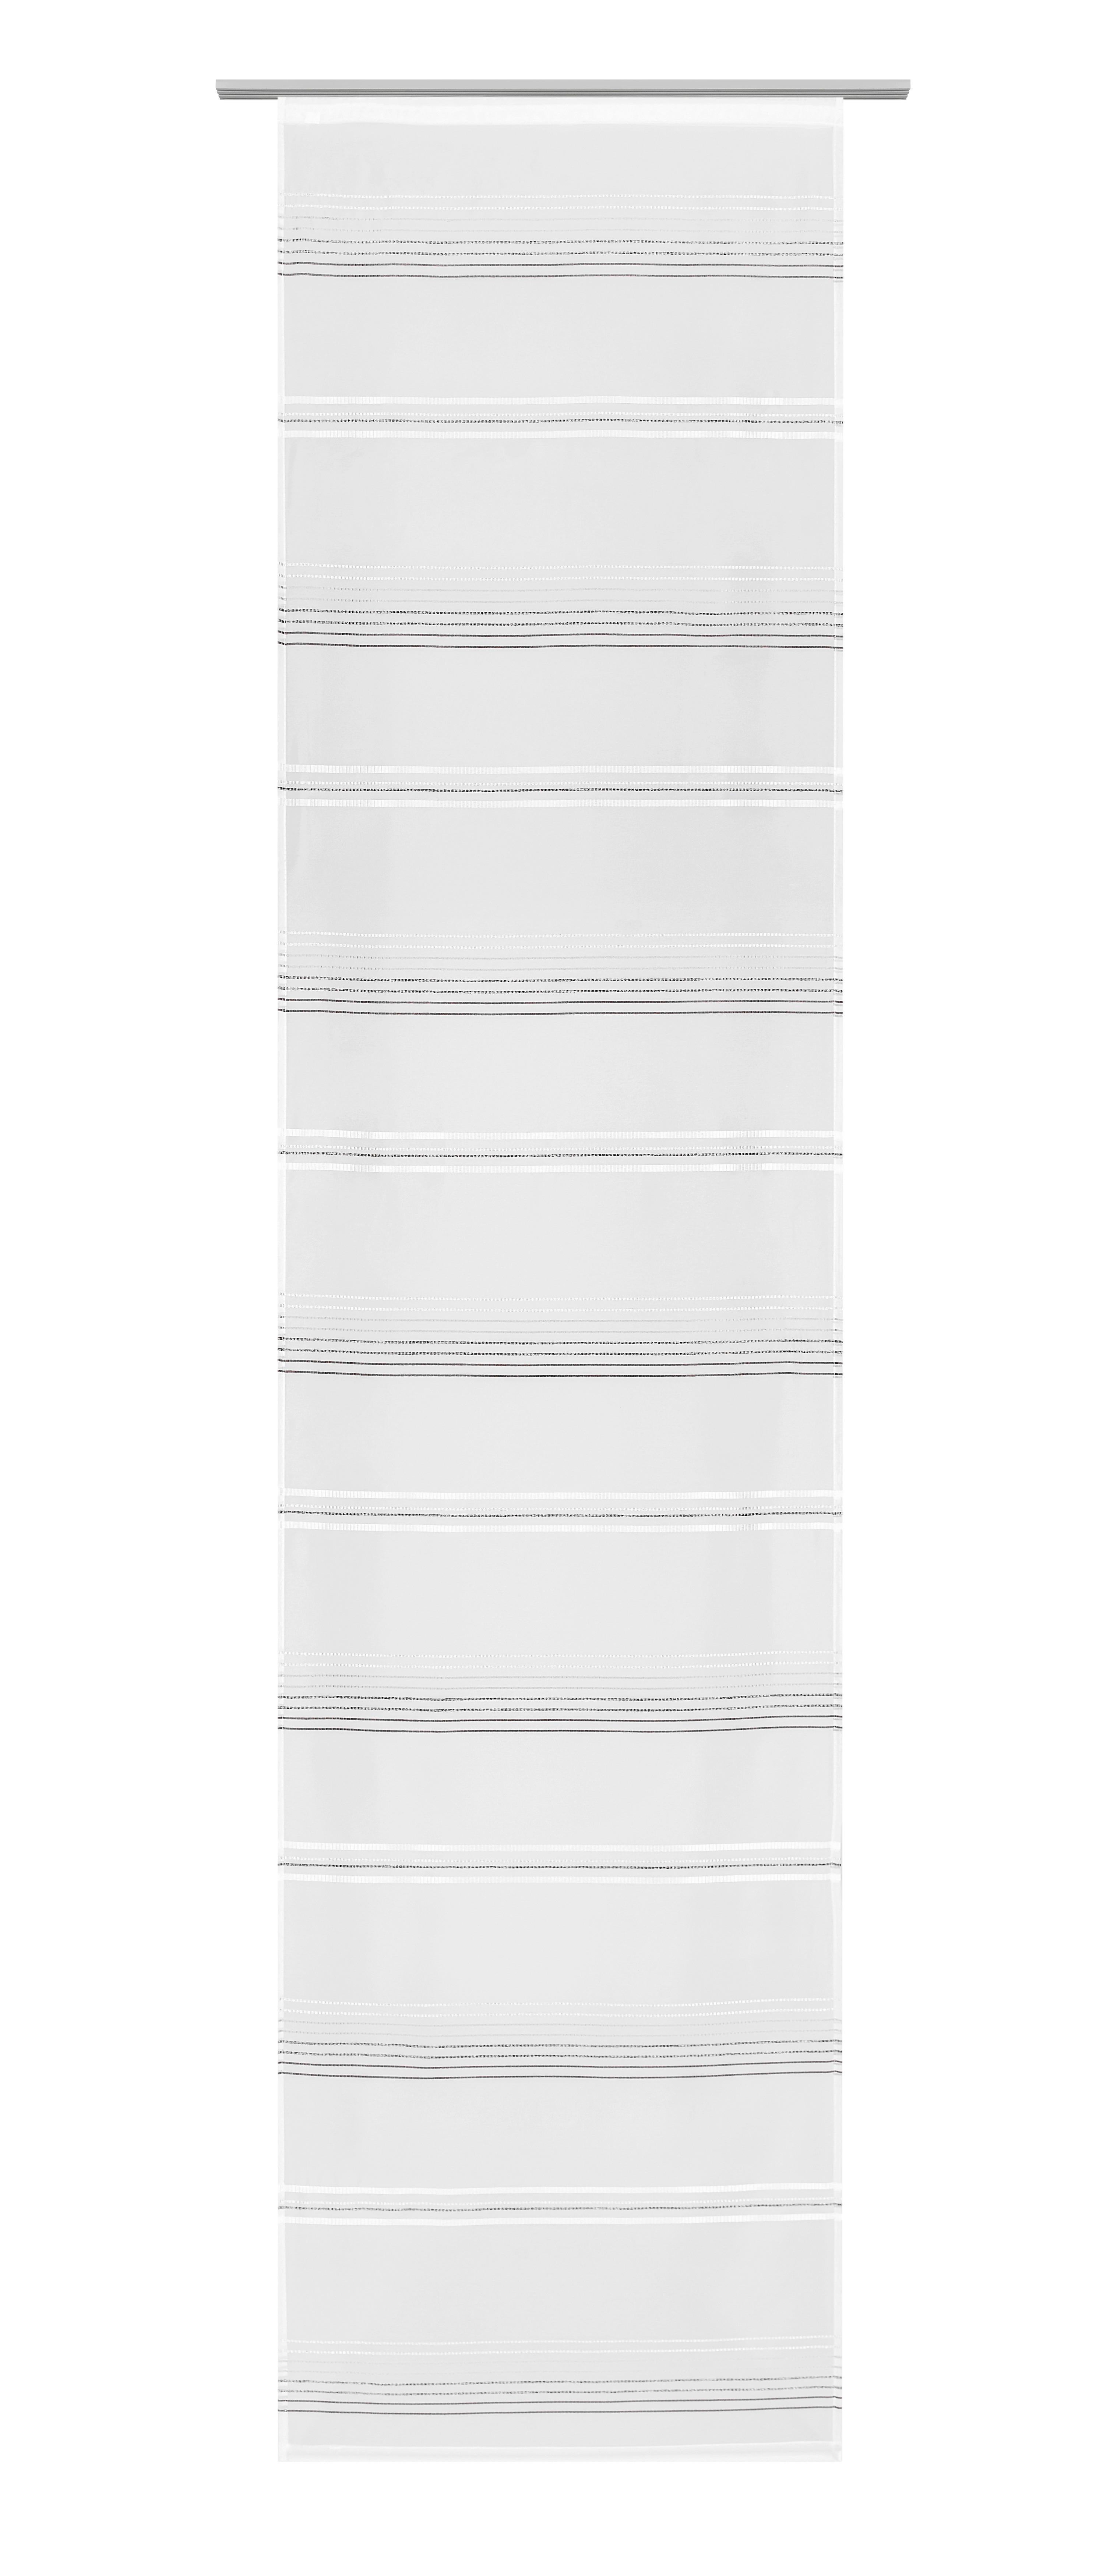 Flächenvorhang Louis Grau/Weiß 60x245cm - Weiß/Grau, KONVENTIONELL, Textil (60/245cm) - Modern Living